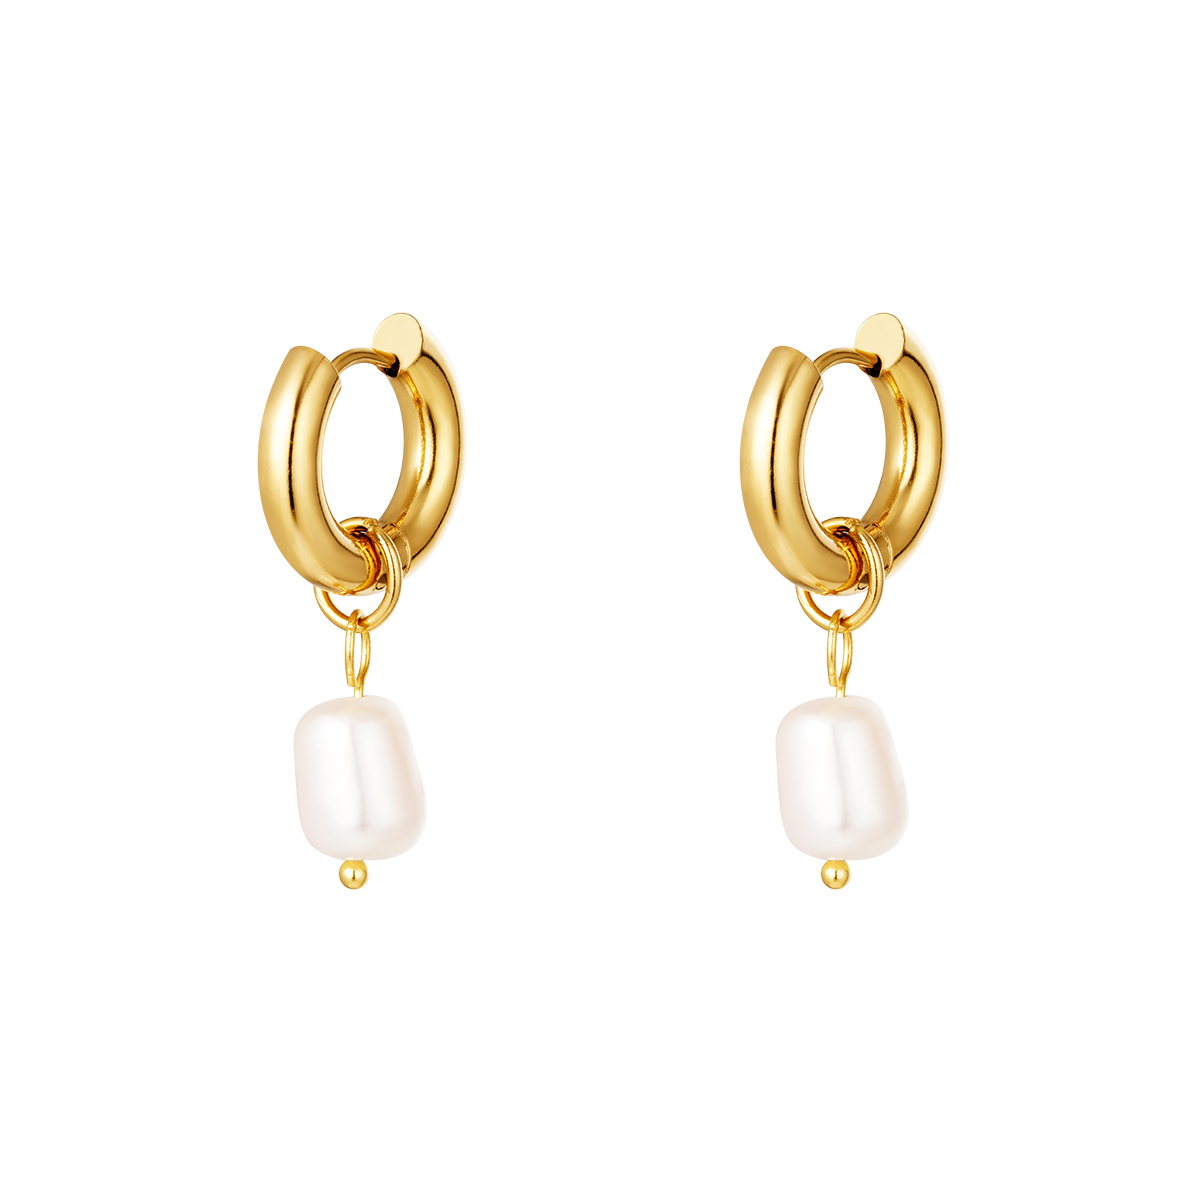 Stainless steel earrings pearls simple